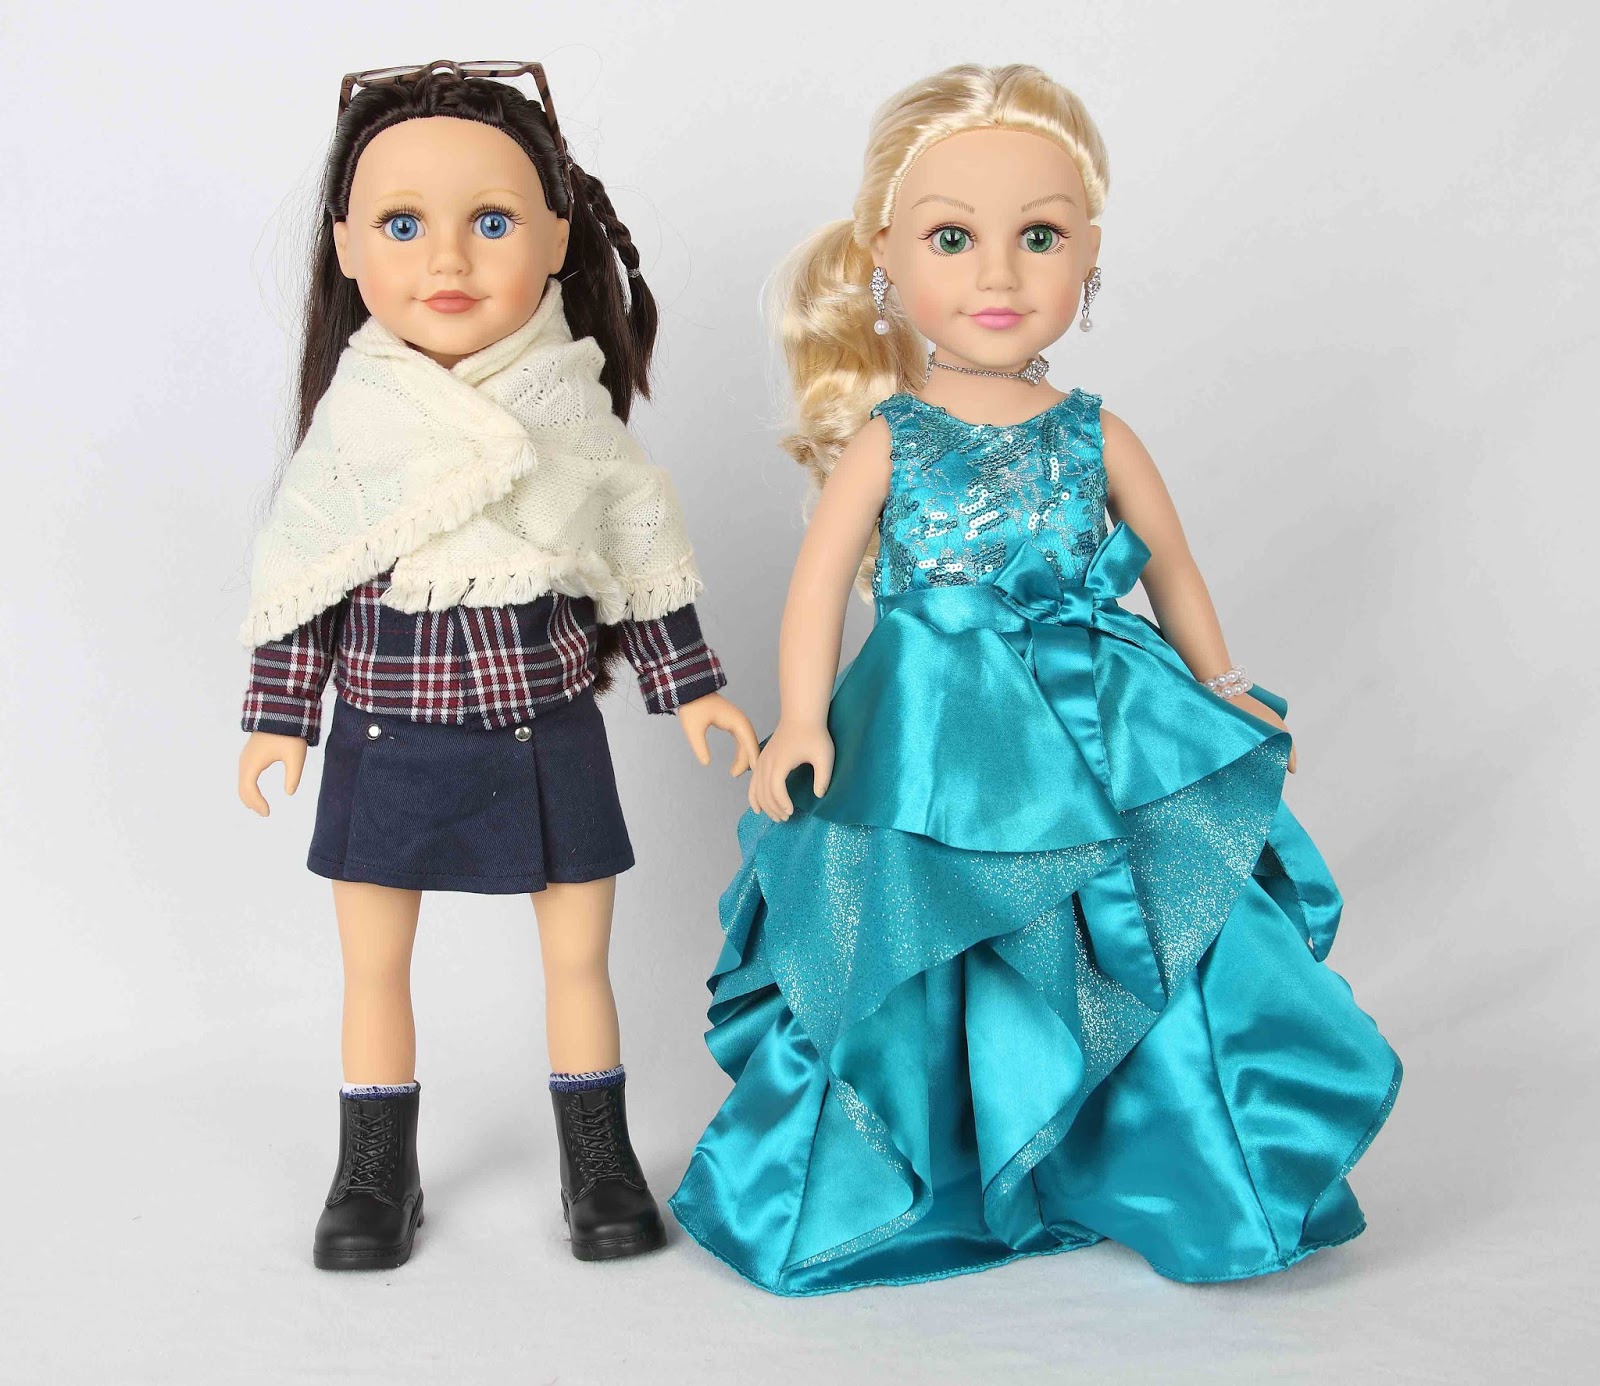 all journey girl dolls